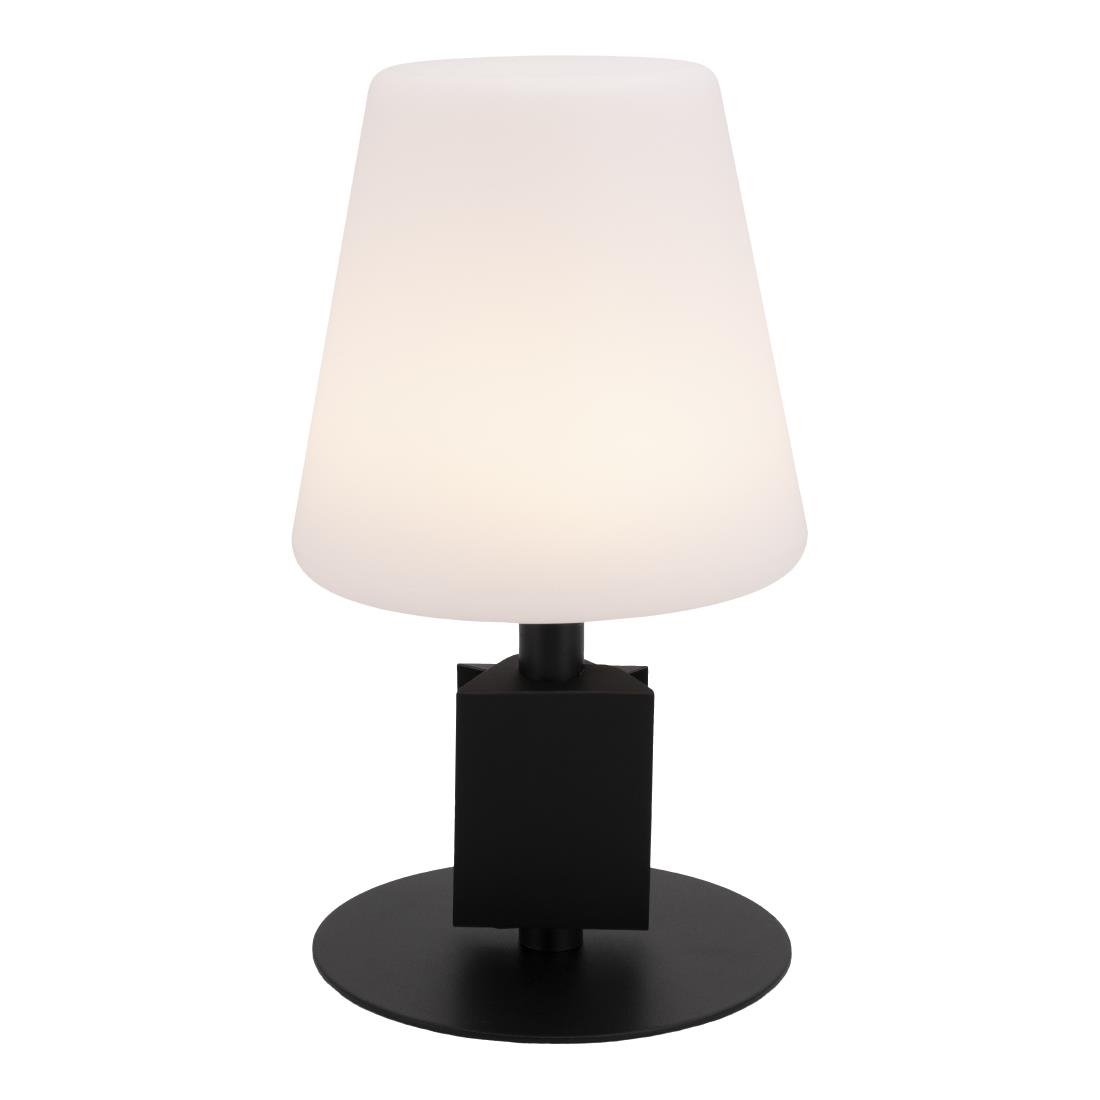 Lampe de table noire LED Securit Michelle avec 3 étiquettes ardoises amovibles 